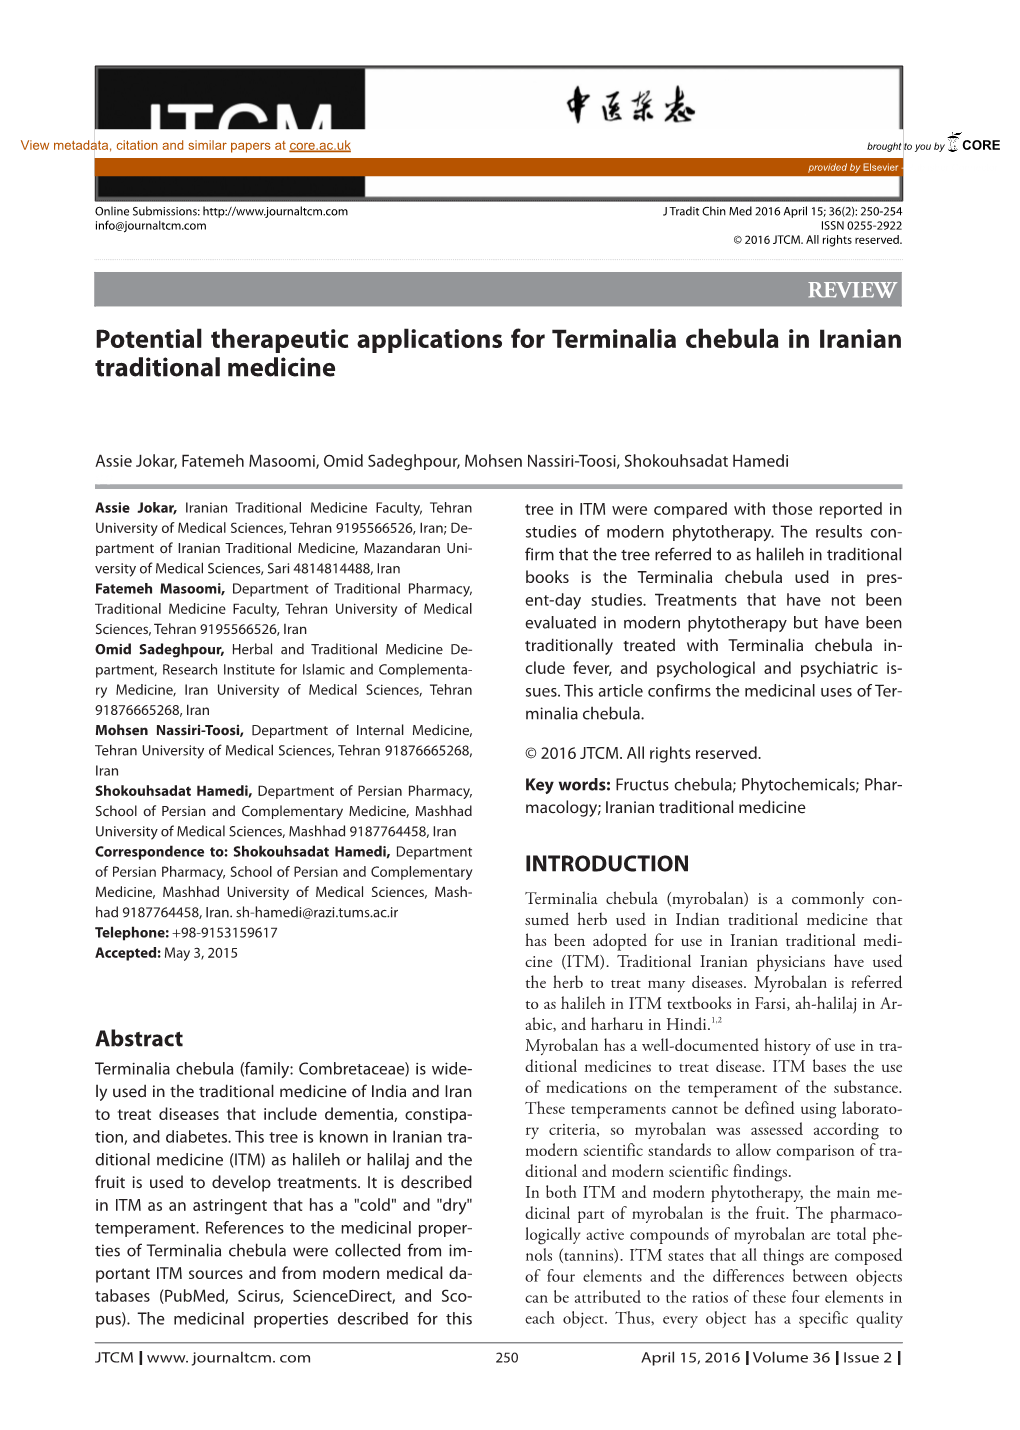 Potential Therapeutic Applications for Terminalia Chebula in Iranian Traditional Medicine